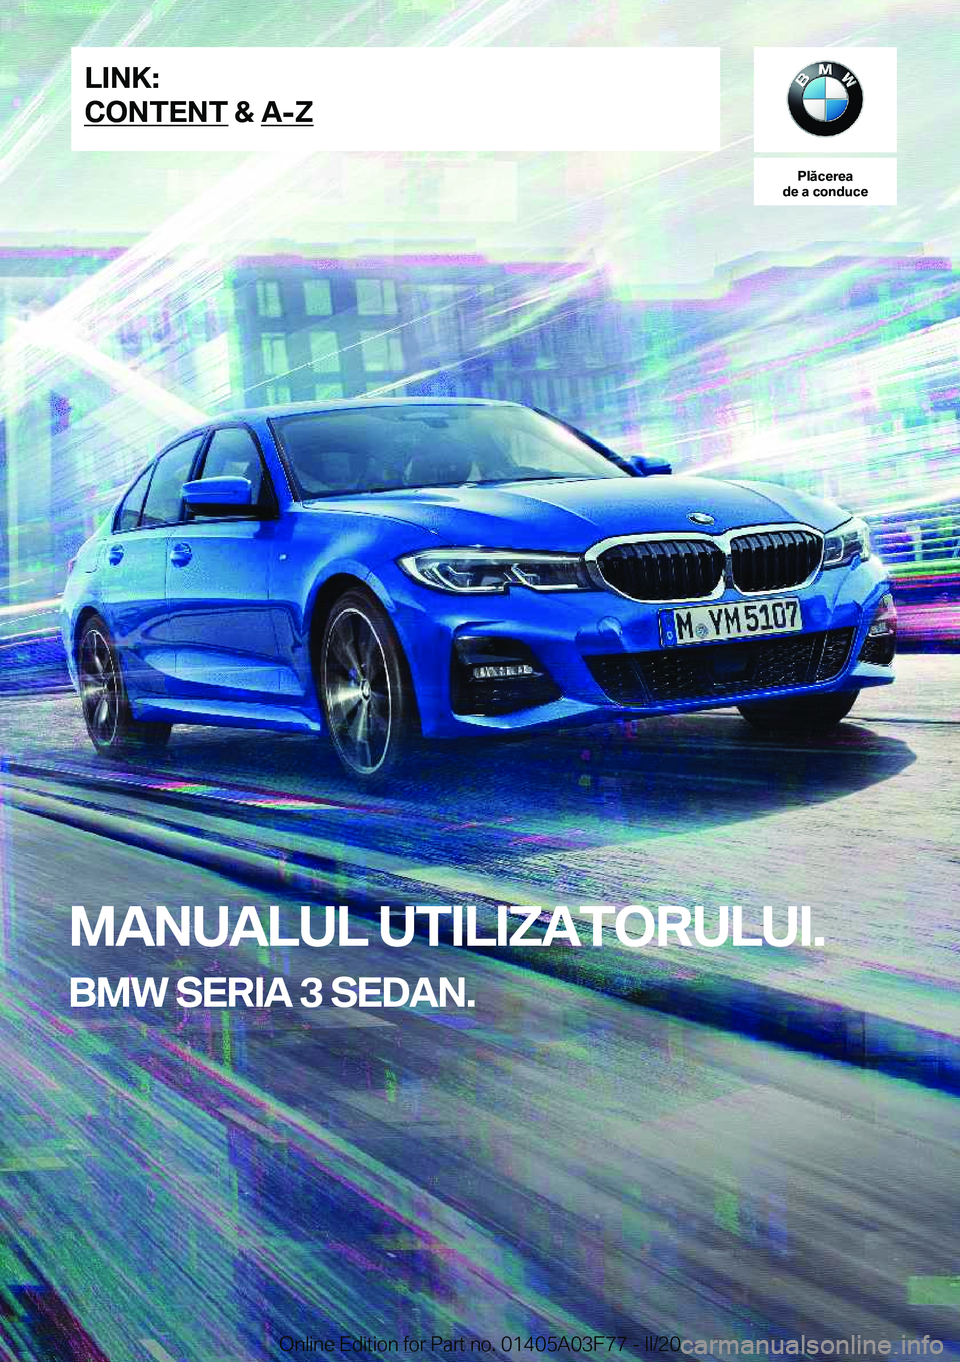 BMW 3 SERIES 2020  Ghiduri De Utilizare (in Romanian) �P�l�ă�c�e�r�e�a
�d�e��a��c�o�n�d�u�c�e
�M�A�N�U�A�L�U�L��U�T�I�L�I�Z�A�T�O�R�U�L�U�I�.
�B�M�W��S�E�R�I�A��3��S�E�D�A�N�.�L�I�N�K�:
�C�O�N�T�E�N�T��&��A�-�Z�O�n�l�i�n�e��E�d�i�t�i�o�n��f�o�